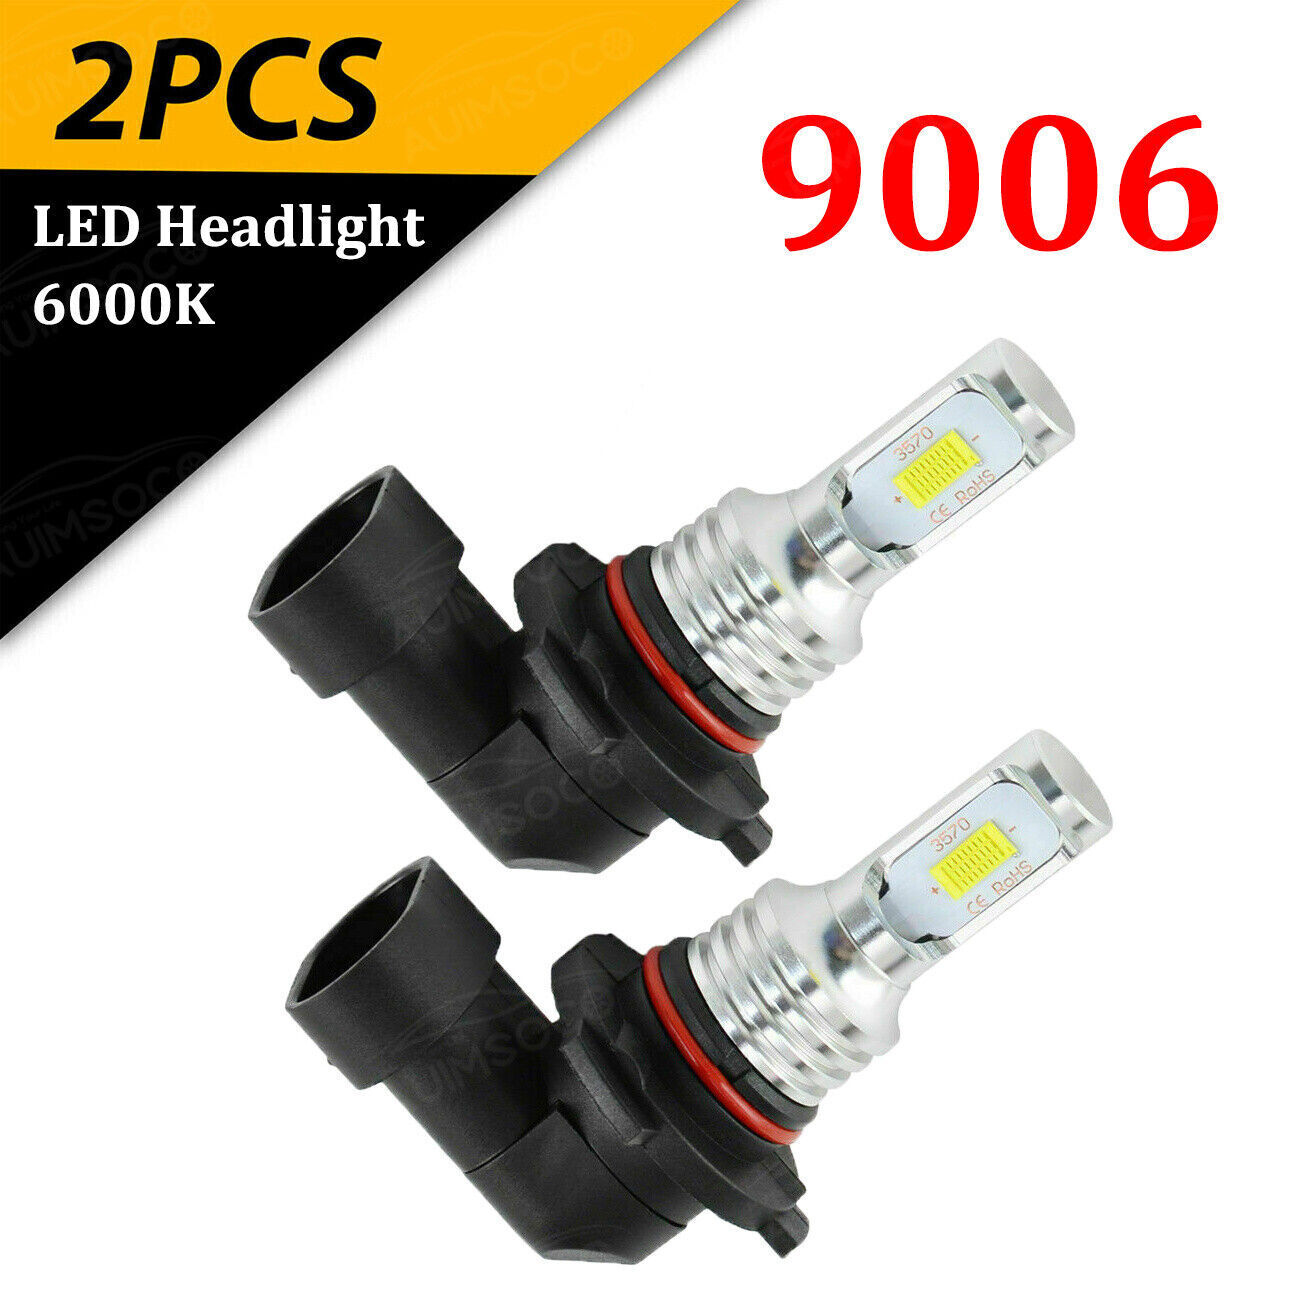 2pc 6000k 9006 LED Headlight Bulb Low Beam for Chevy Silverado 1500 2500 3500